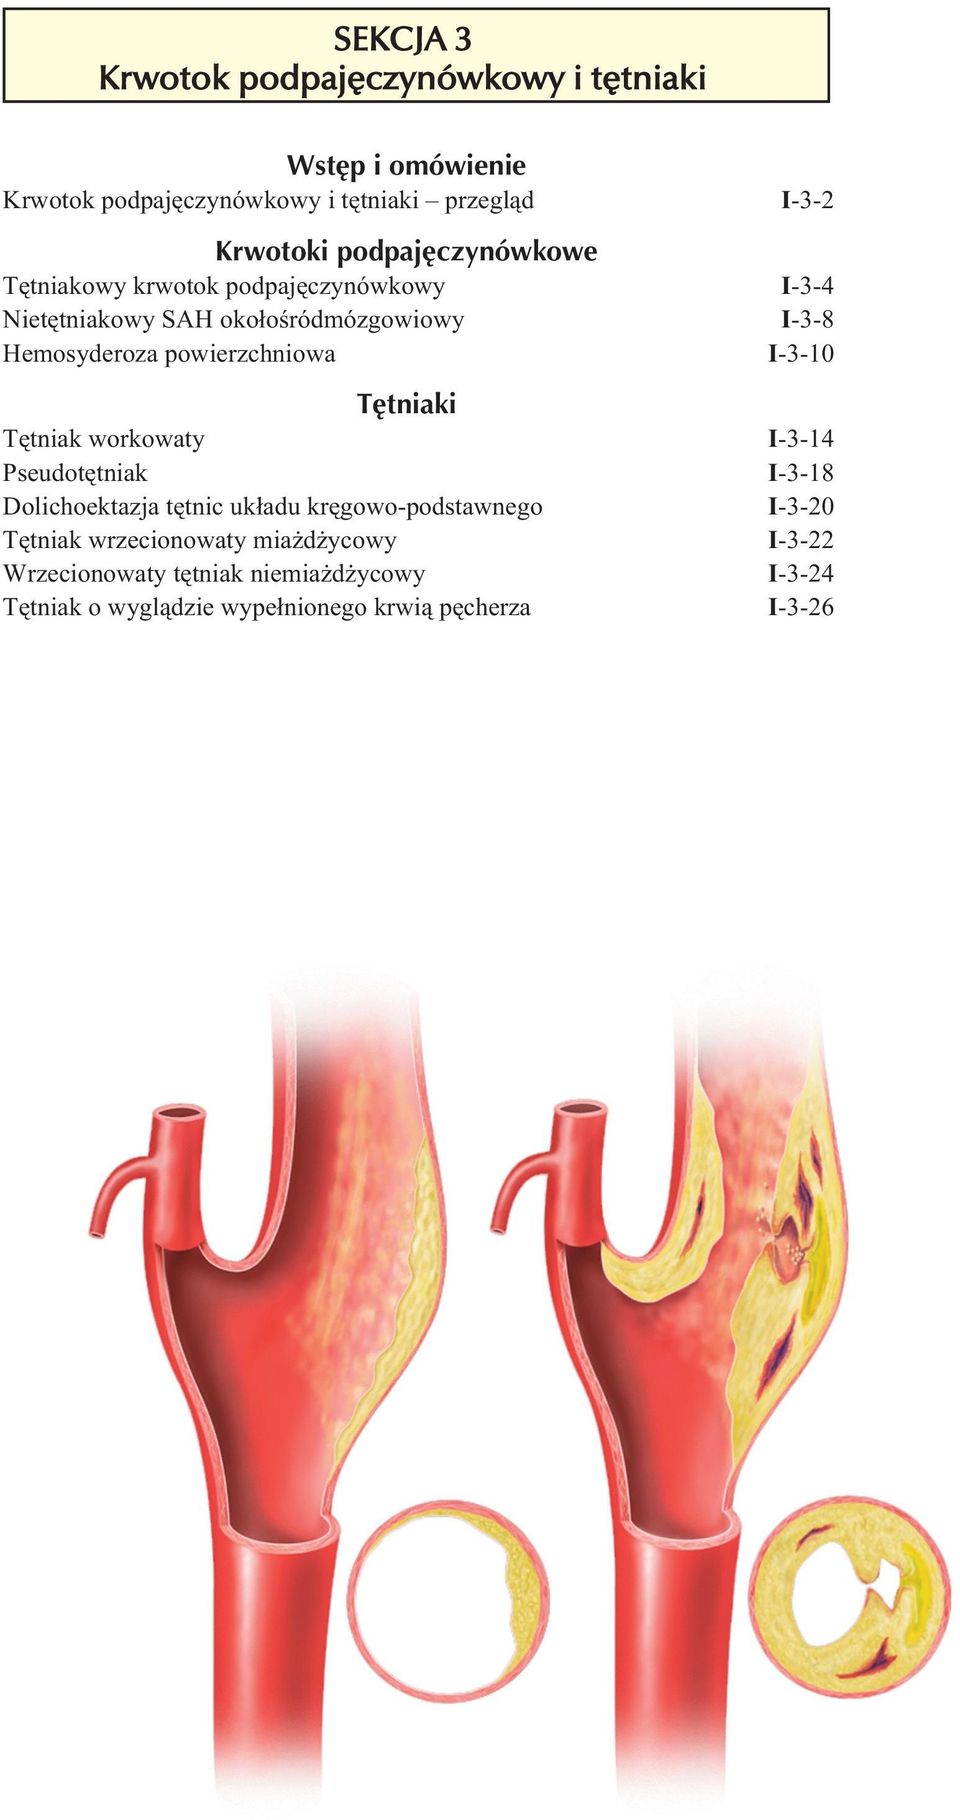 Tętniaki Tętniak workowaty Pseudotętniak Dolichoektazja tętnic układu kręgowo-podstawnego Tętniak wrzecionowaty miażdżycowy